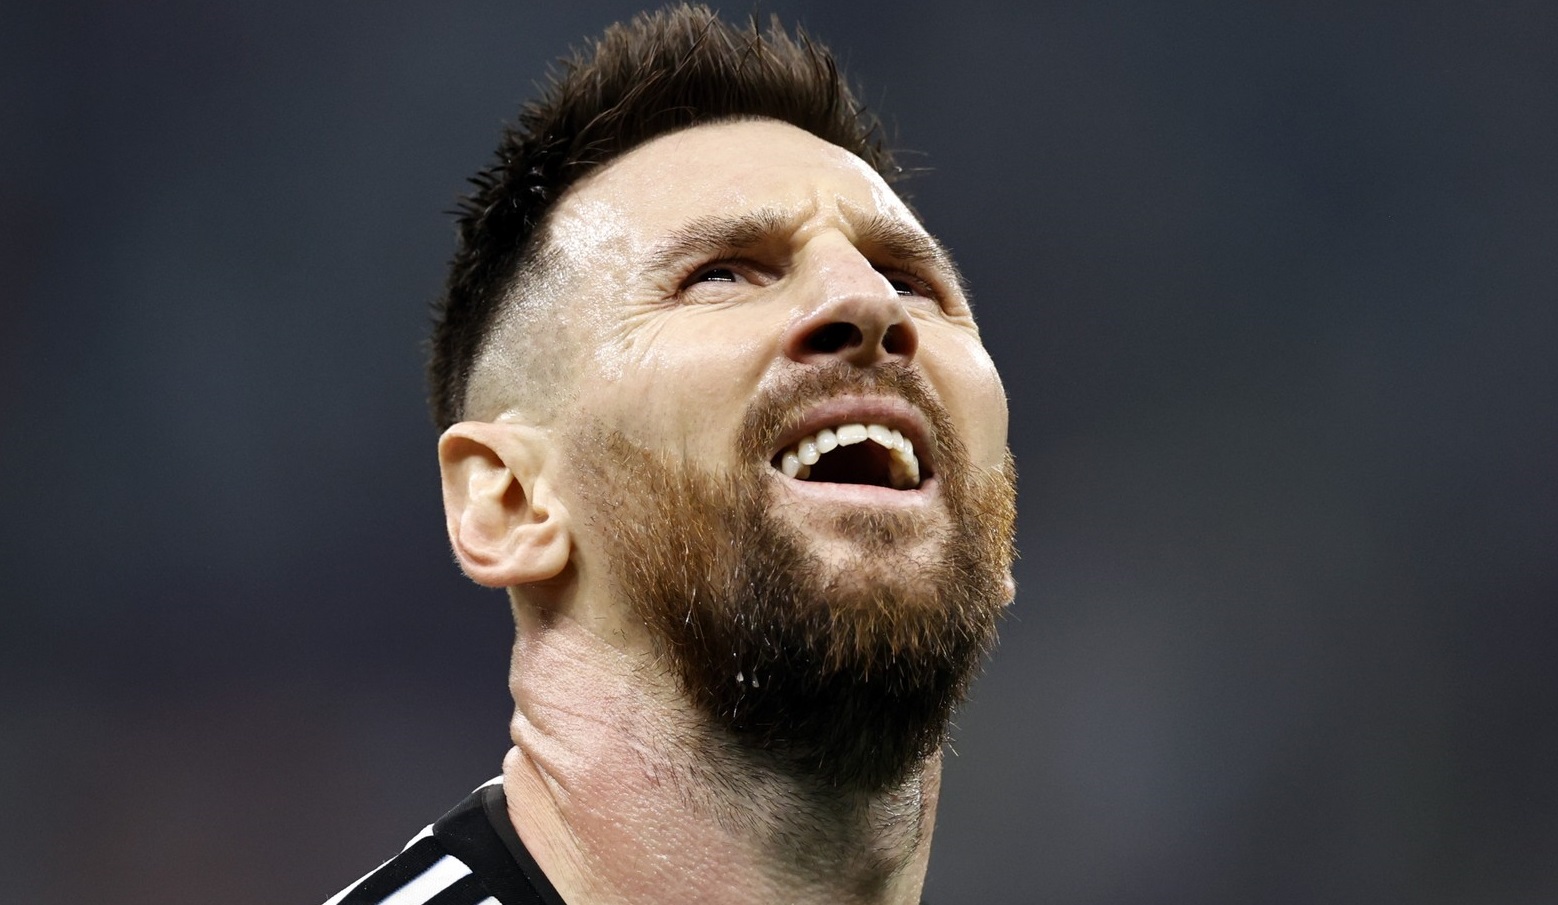 L-a învins pe Messi în finala din 2014, iar acum a avut o reacție memorabilă, după ce Argentina a devenit campioană mondială